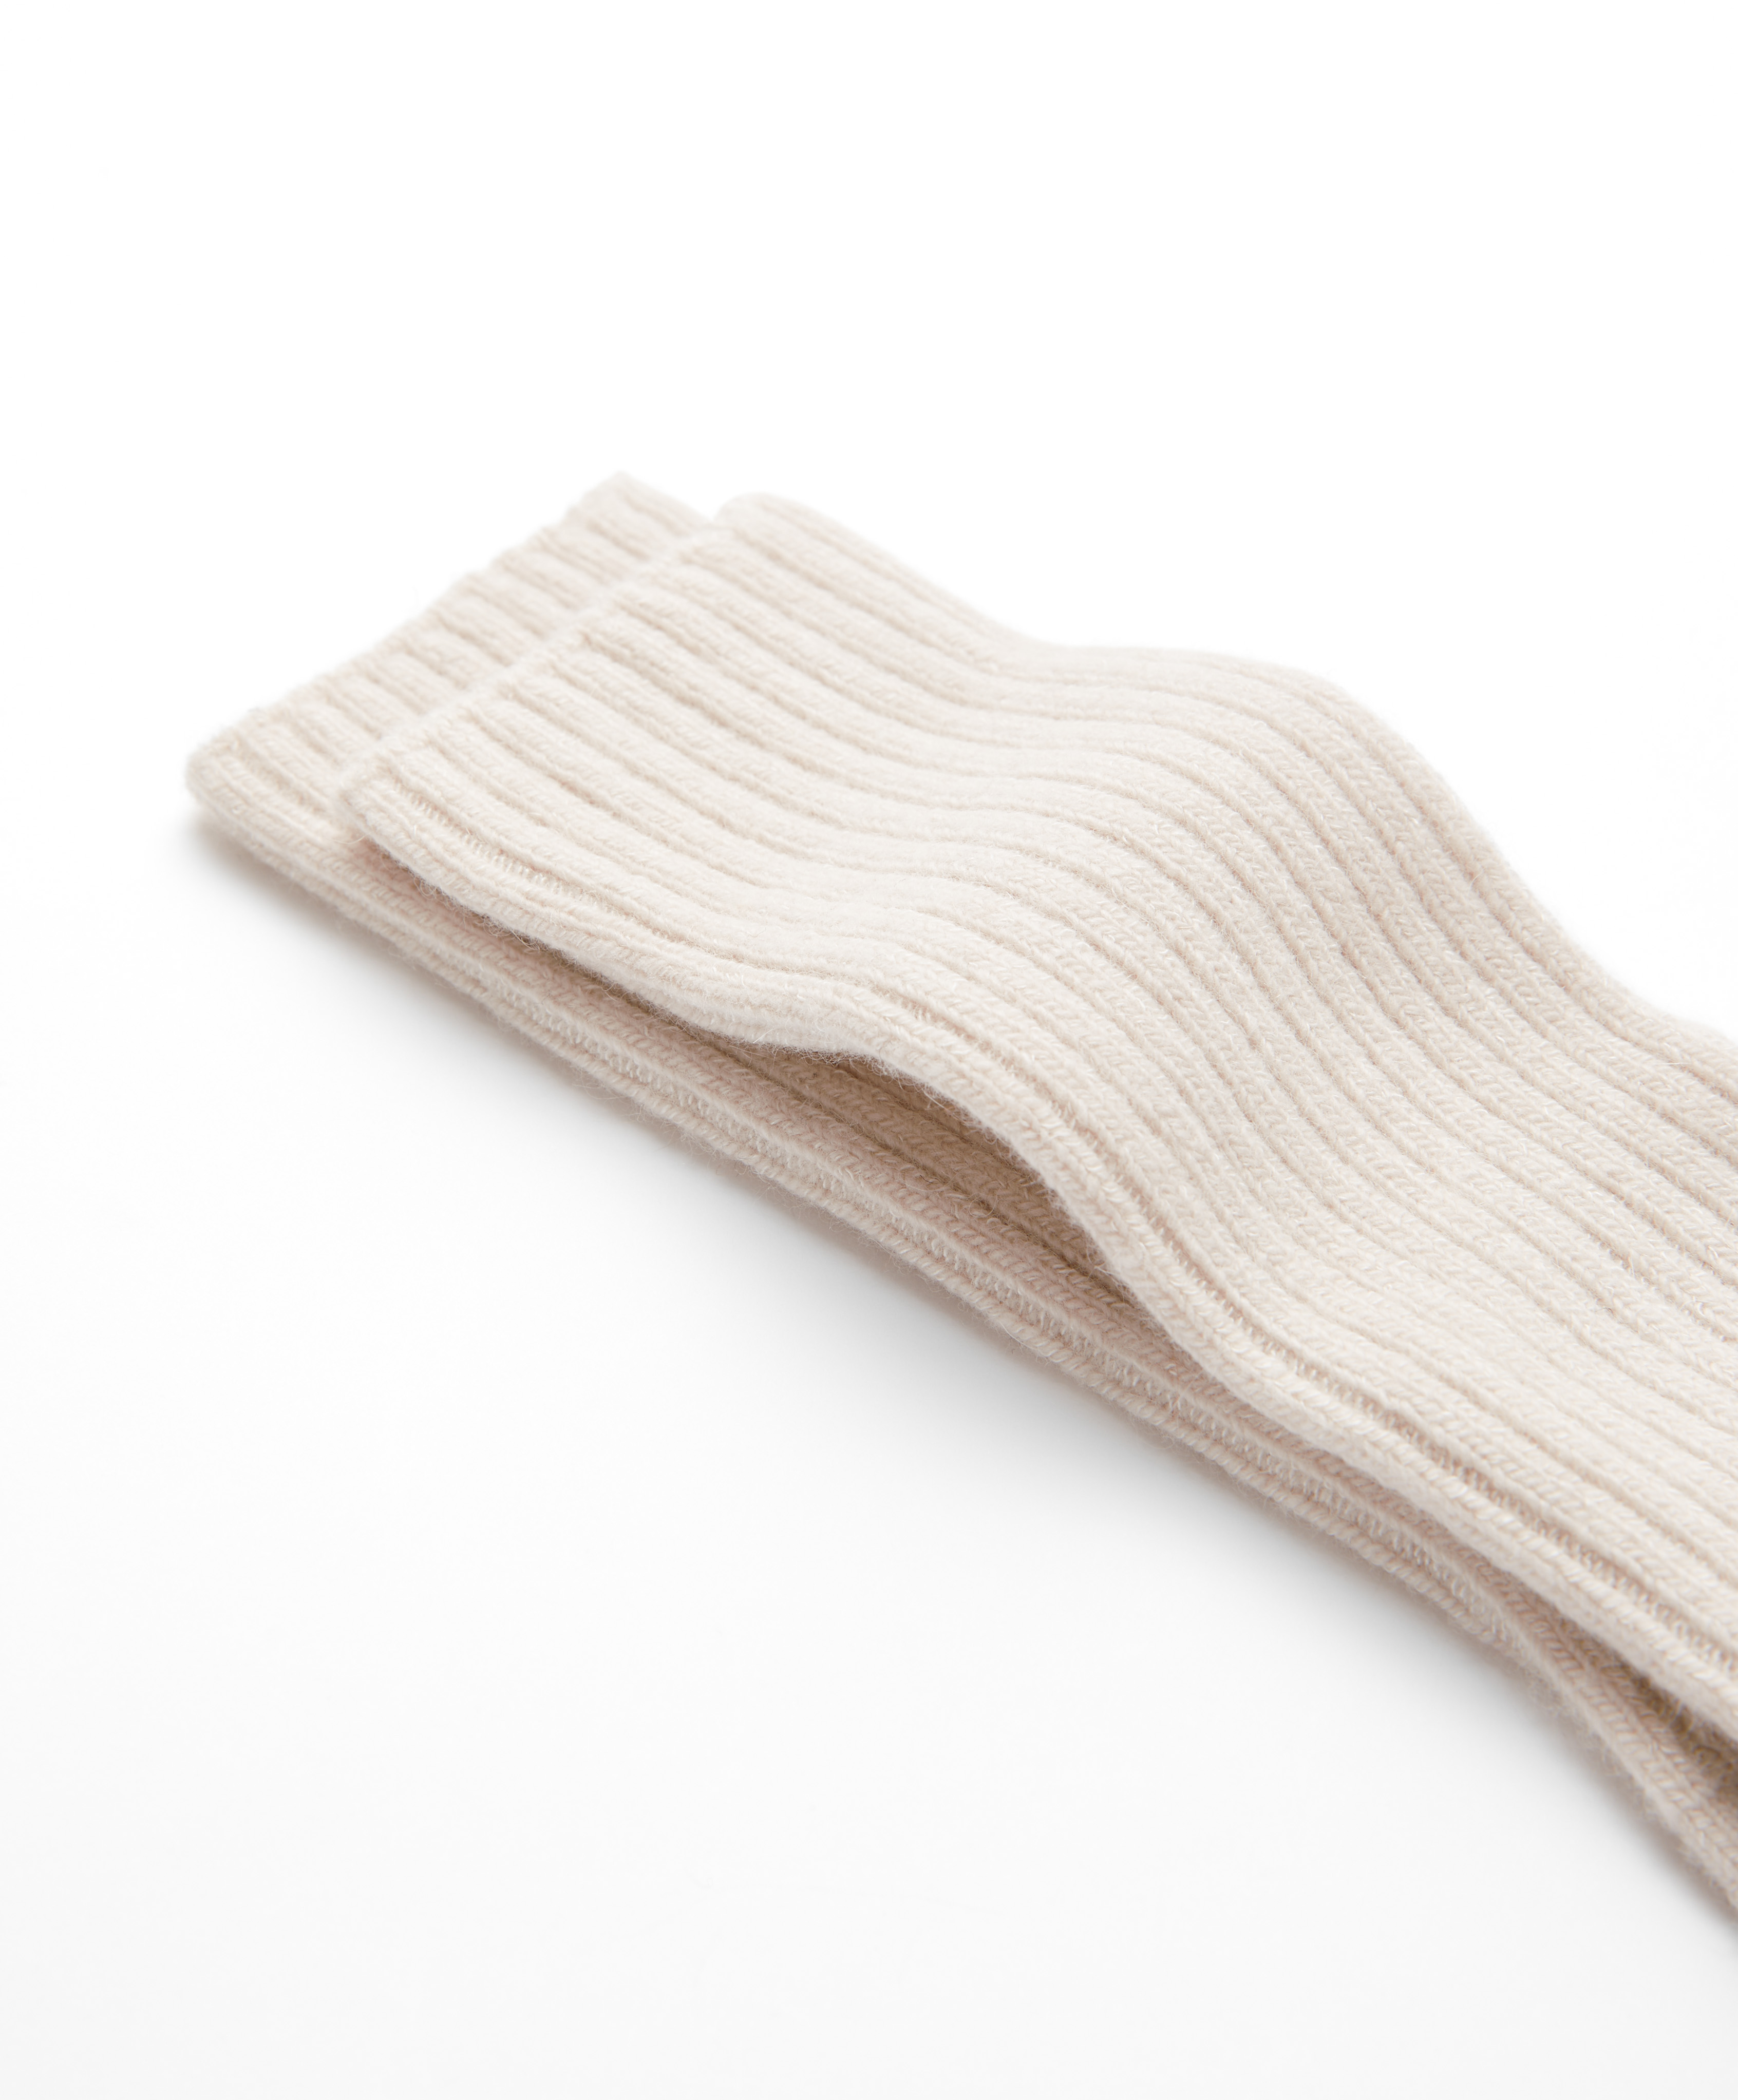 Classic sokken van wol en cashmere met ribstructuur